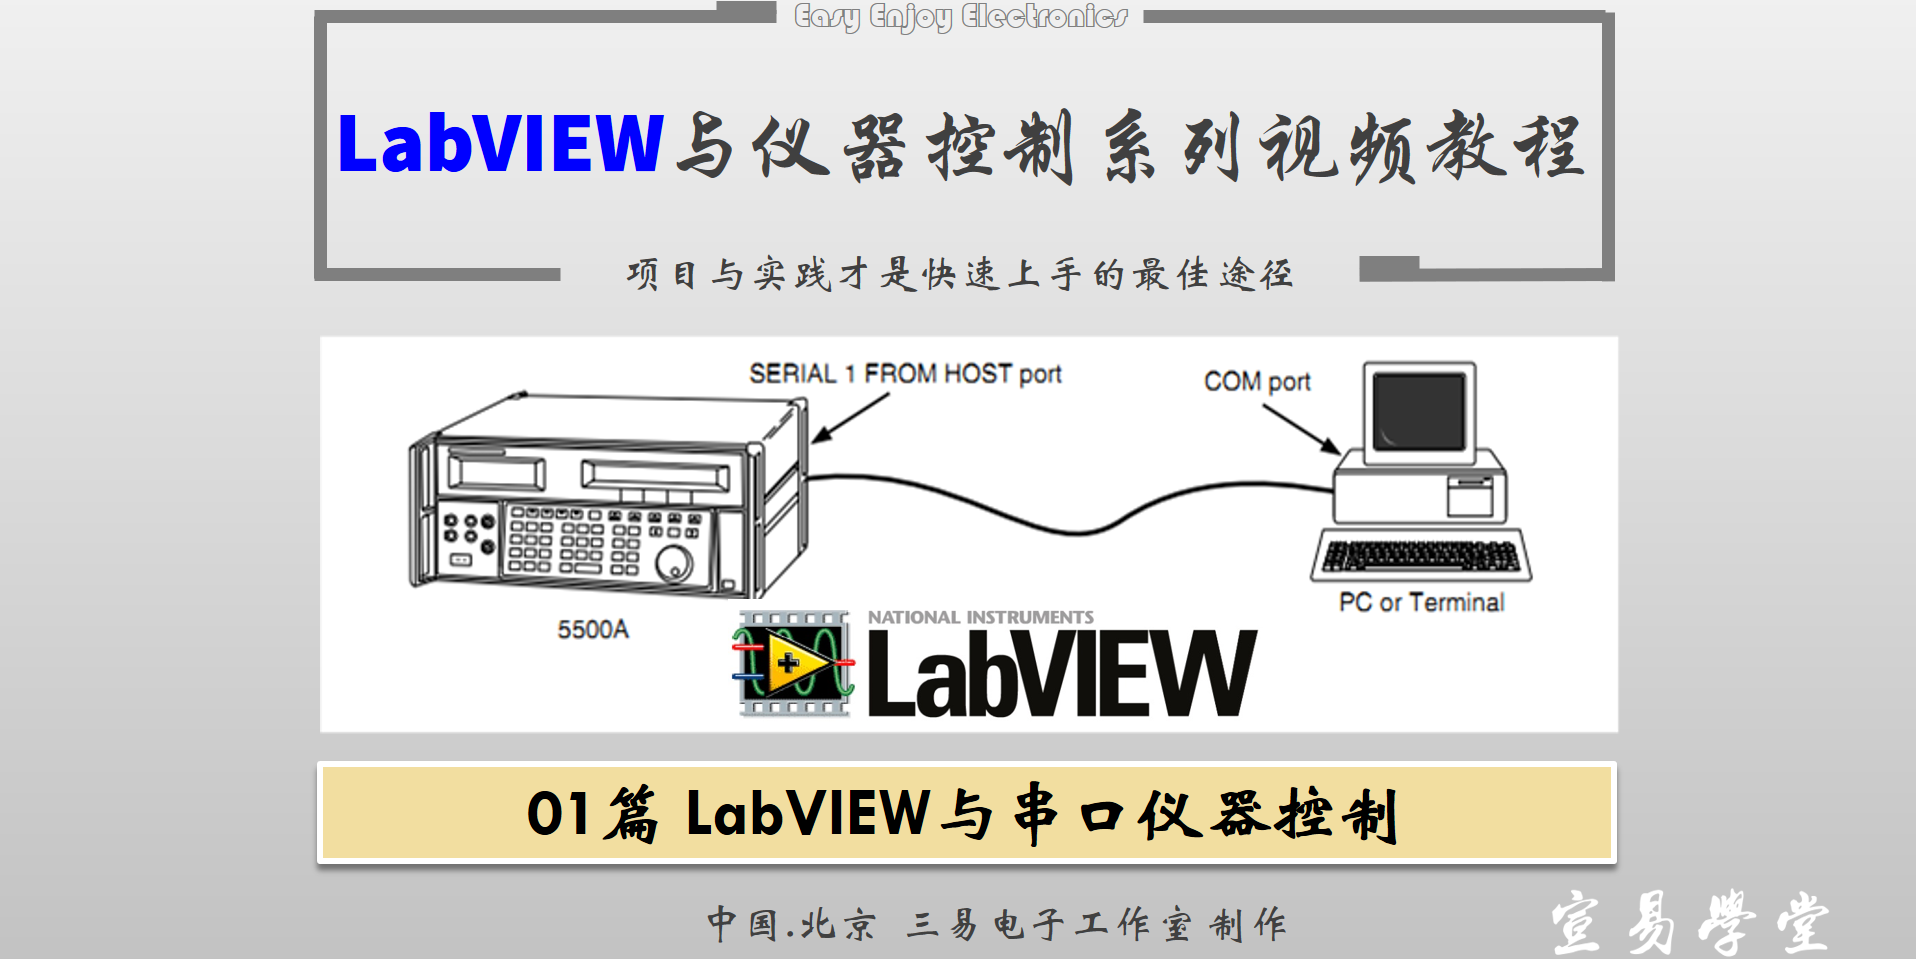 【仪器控制系列】LabVIEW串口通信详解视频教程